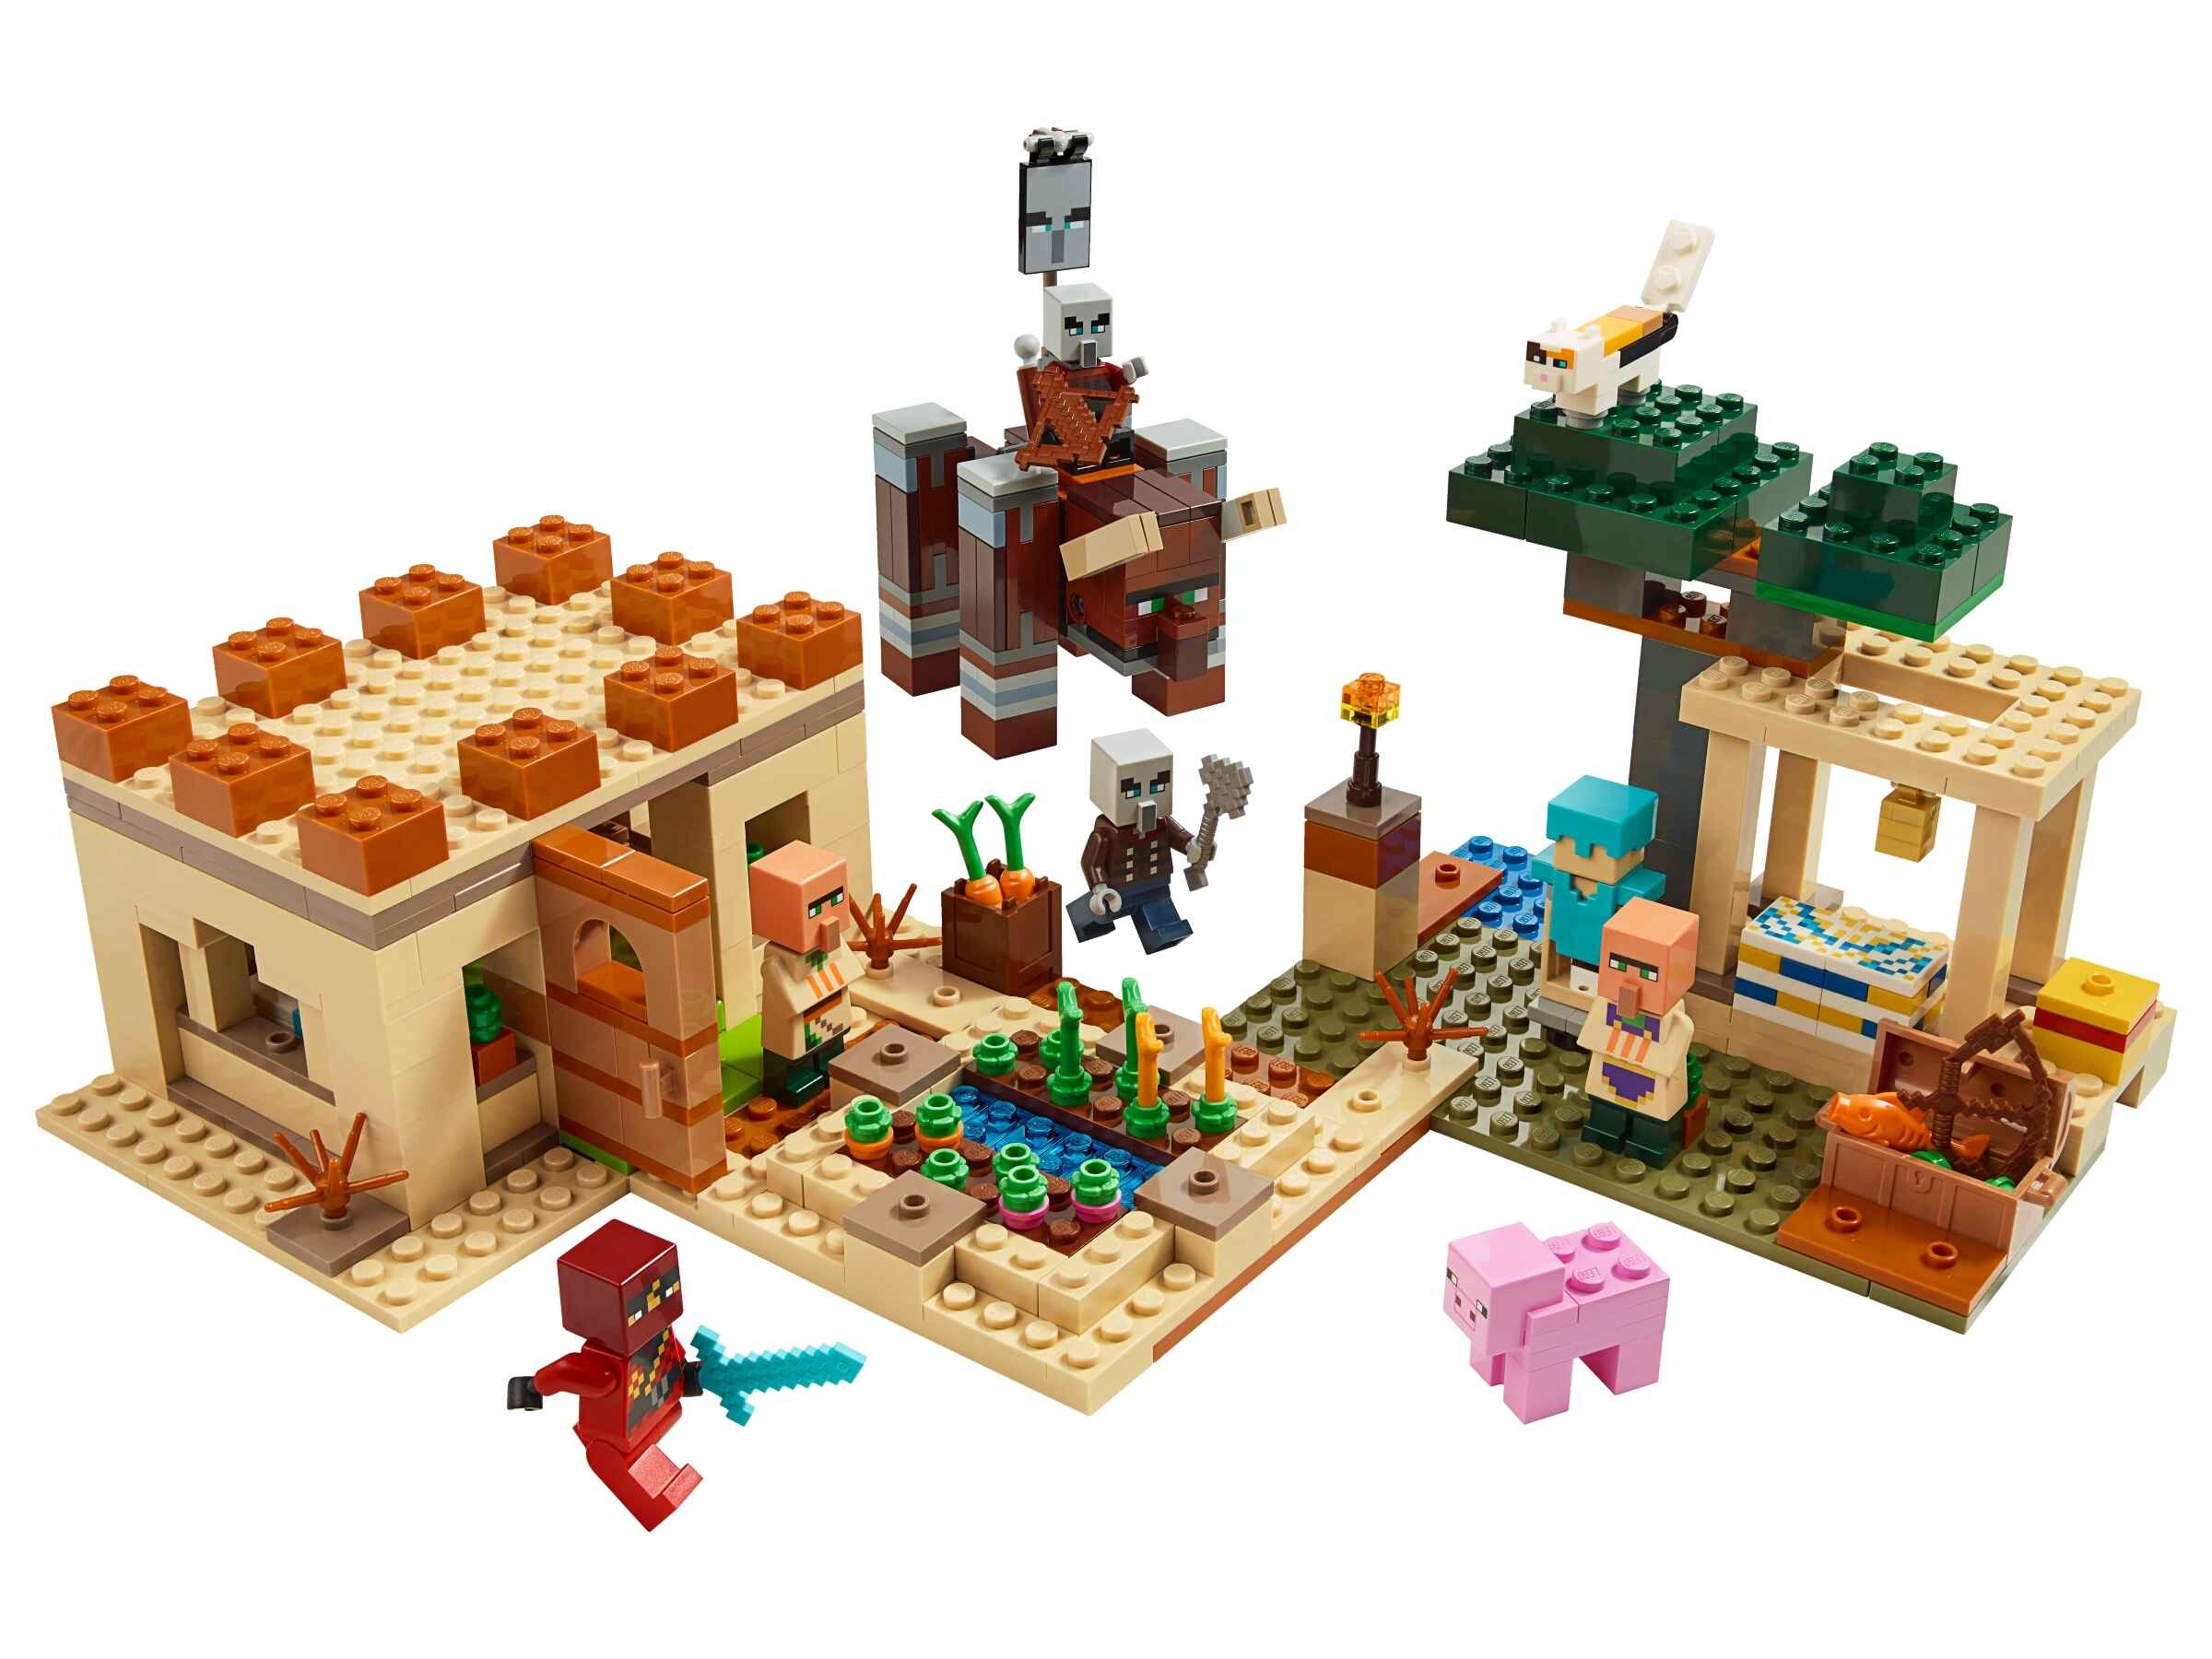 LEGO 21160 Minecraft Der Illager-Überfall, Bauset mit Verwüster und Kai